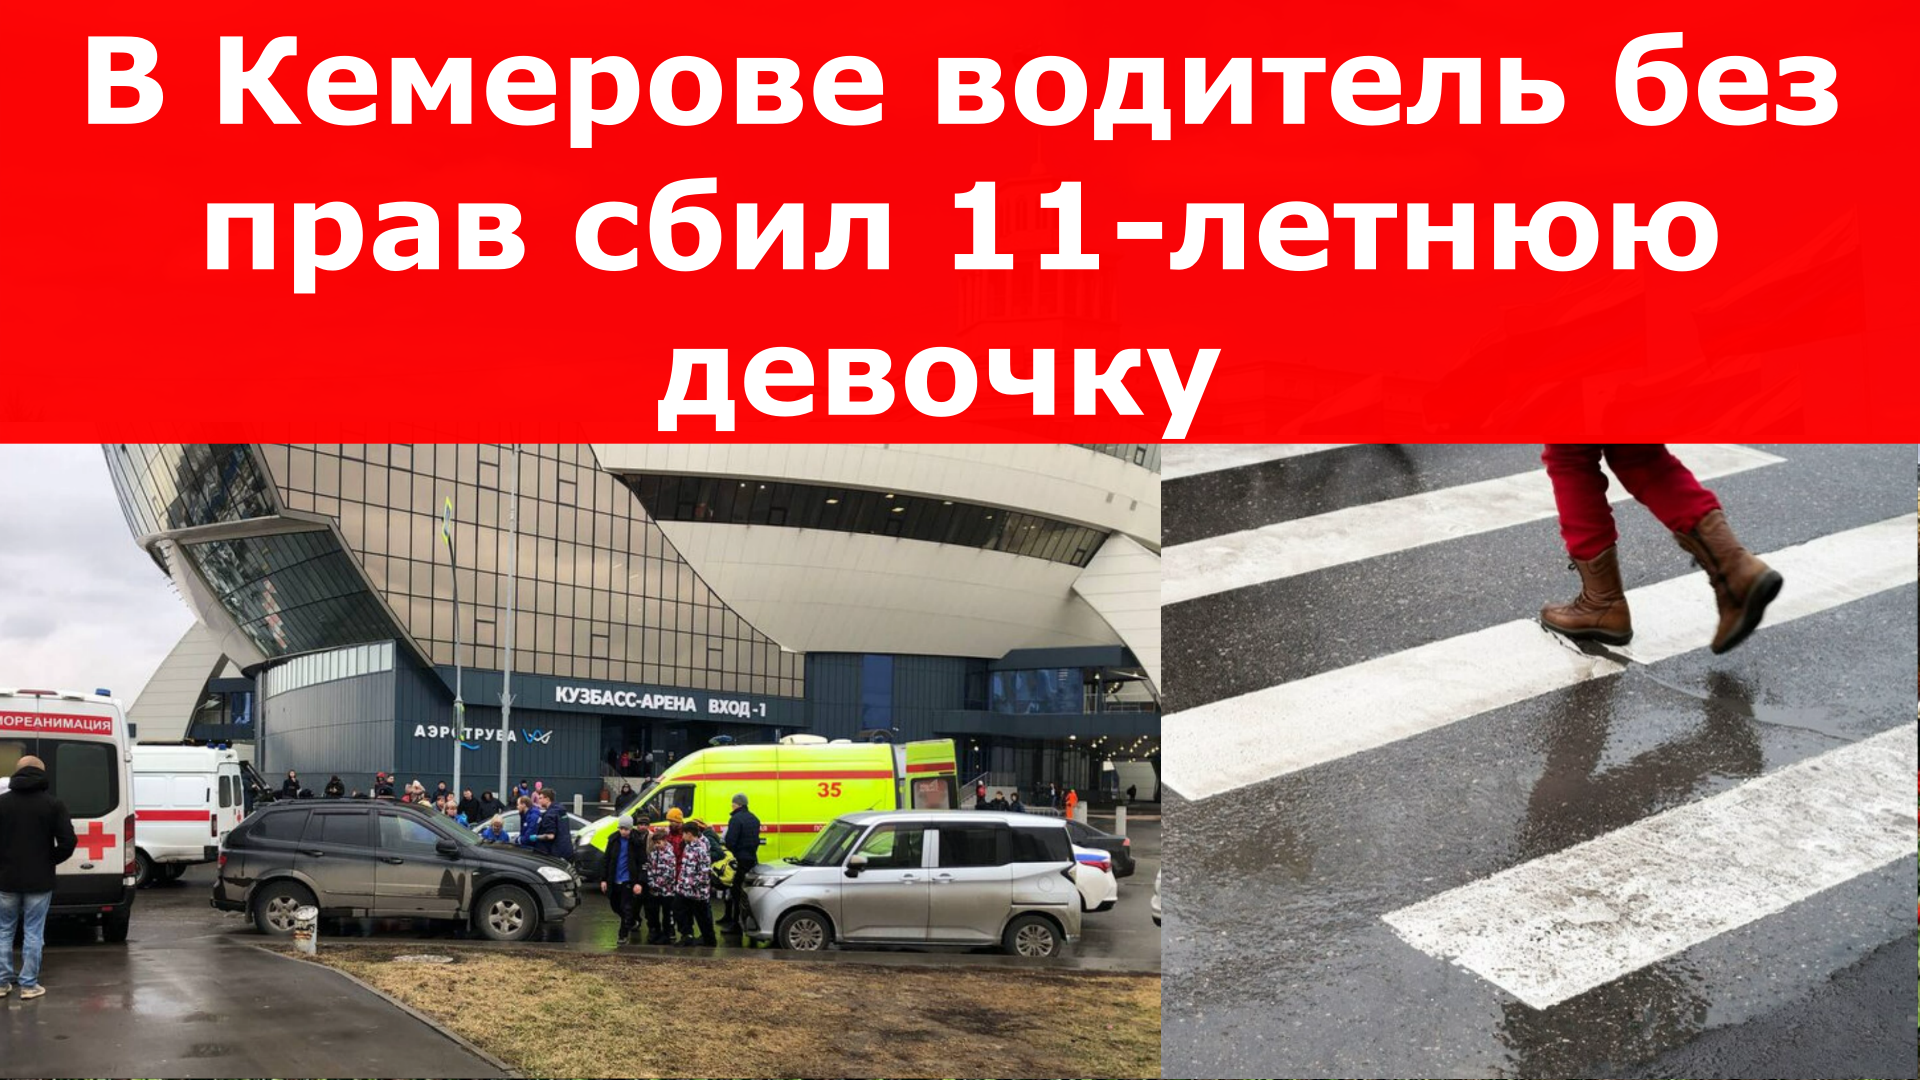 В Кемерове водитель без прав сбил 11-летнюю девочку